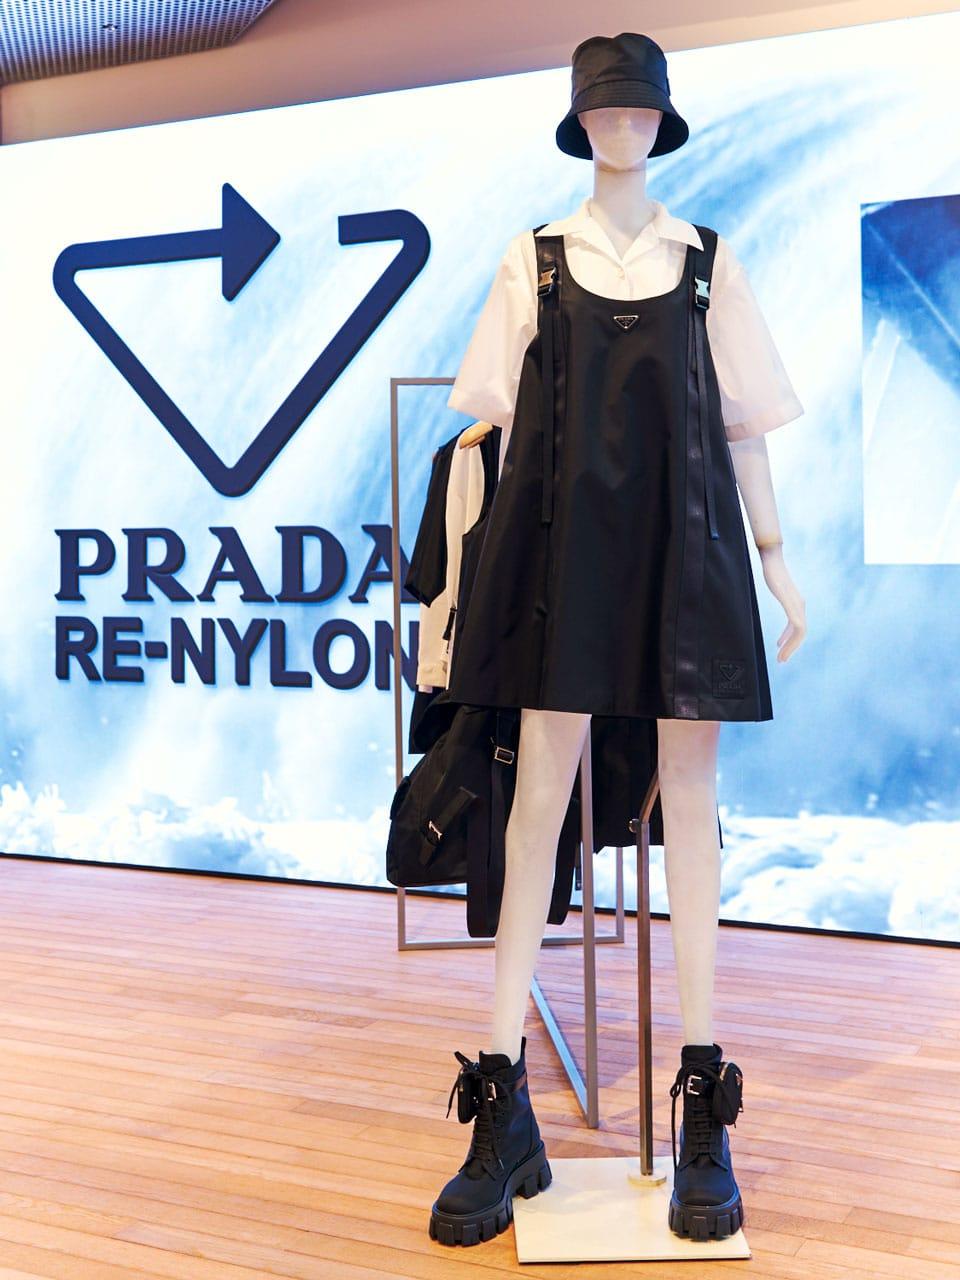 「プラダ  青山店」にインスタレーションが出現。100％再生素材“Re-Nylon”から考える環境問題